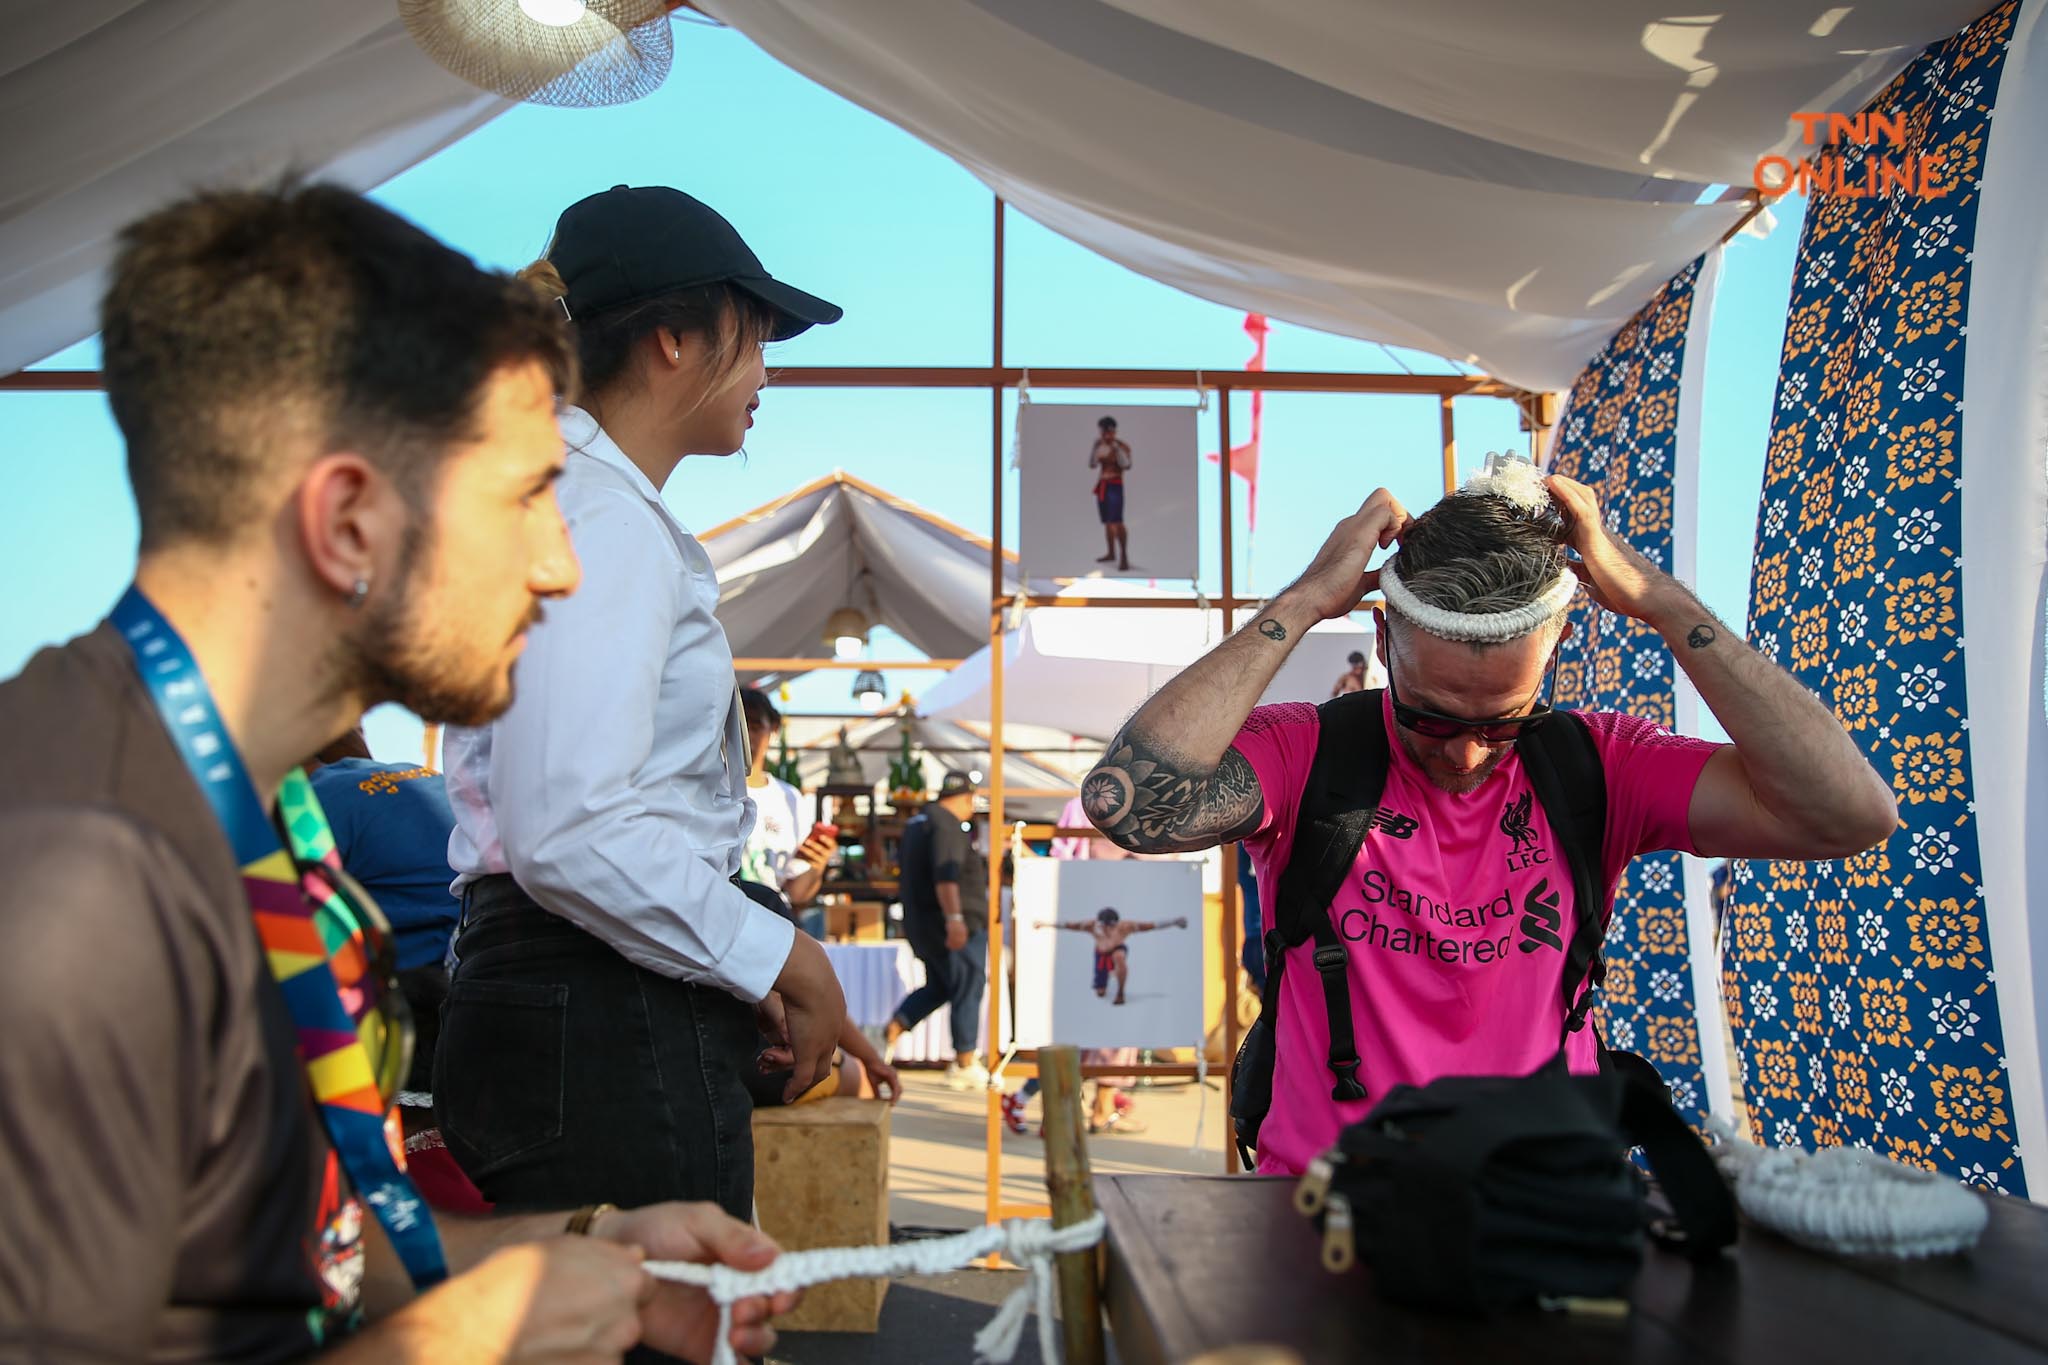 บัวขาวนำไหว้ครูในงาน  “Amazing Muaythai Festival” โชว์เอกลัษณ์มวยไทย สู่สายตาชาวโลก